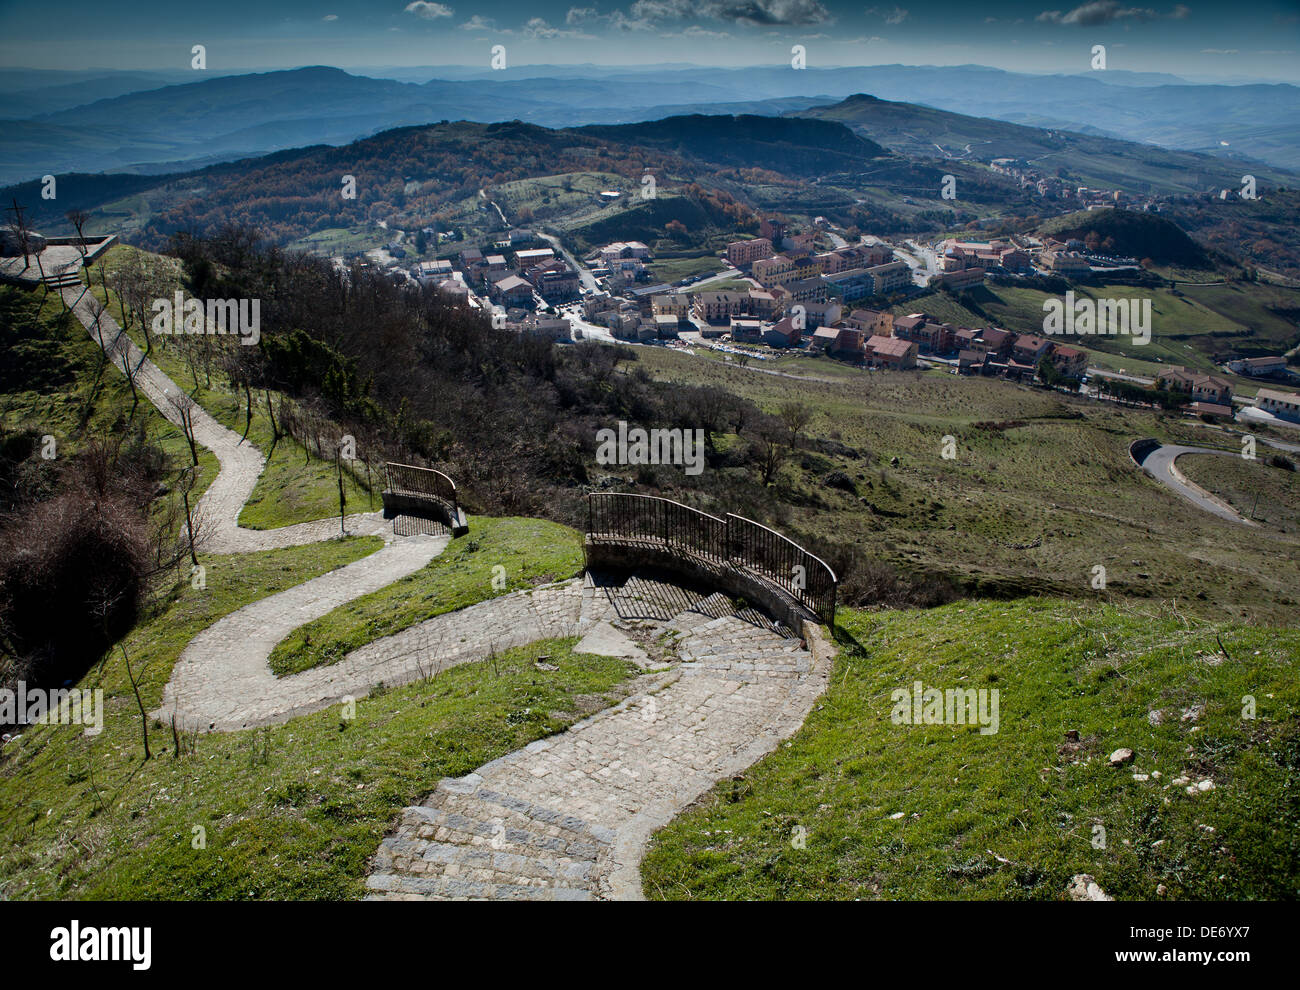 Una vista de la ciudad de montaña de Petralia Sottana Modonie en las montañas, Sicilia. Foto de stock